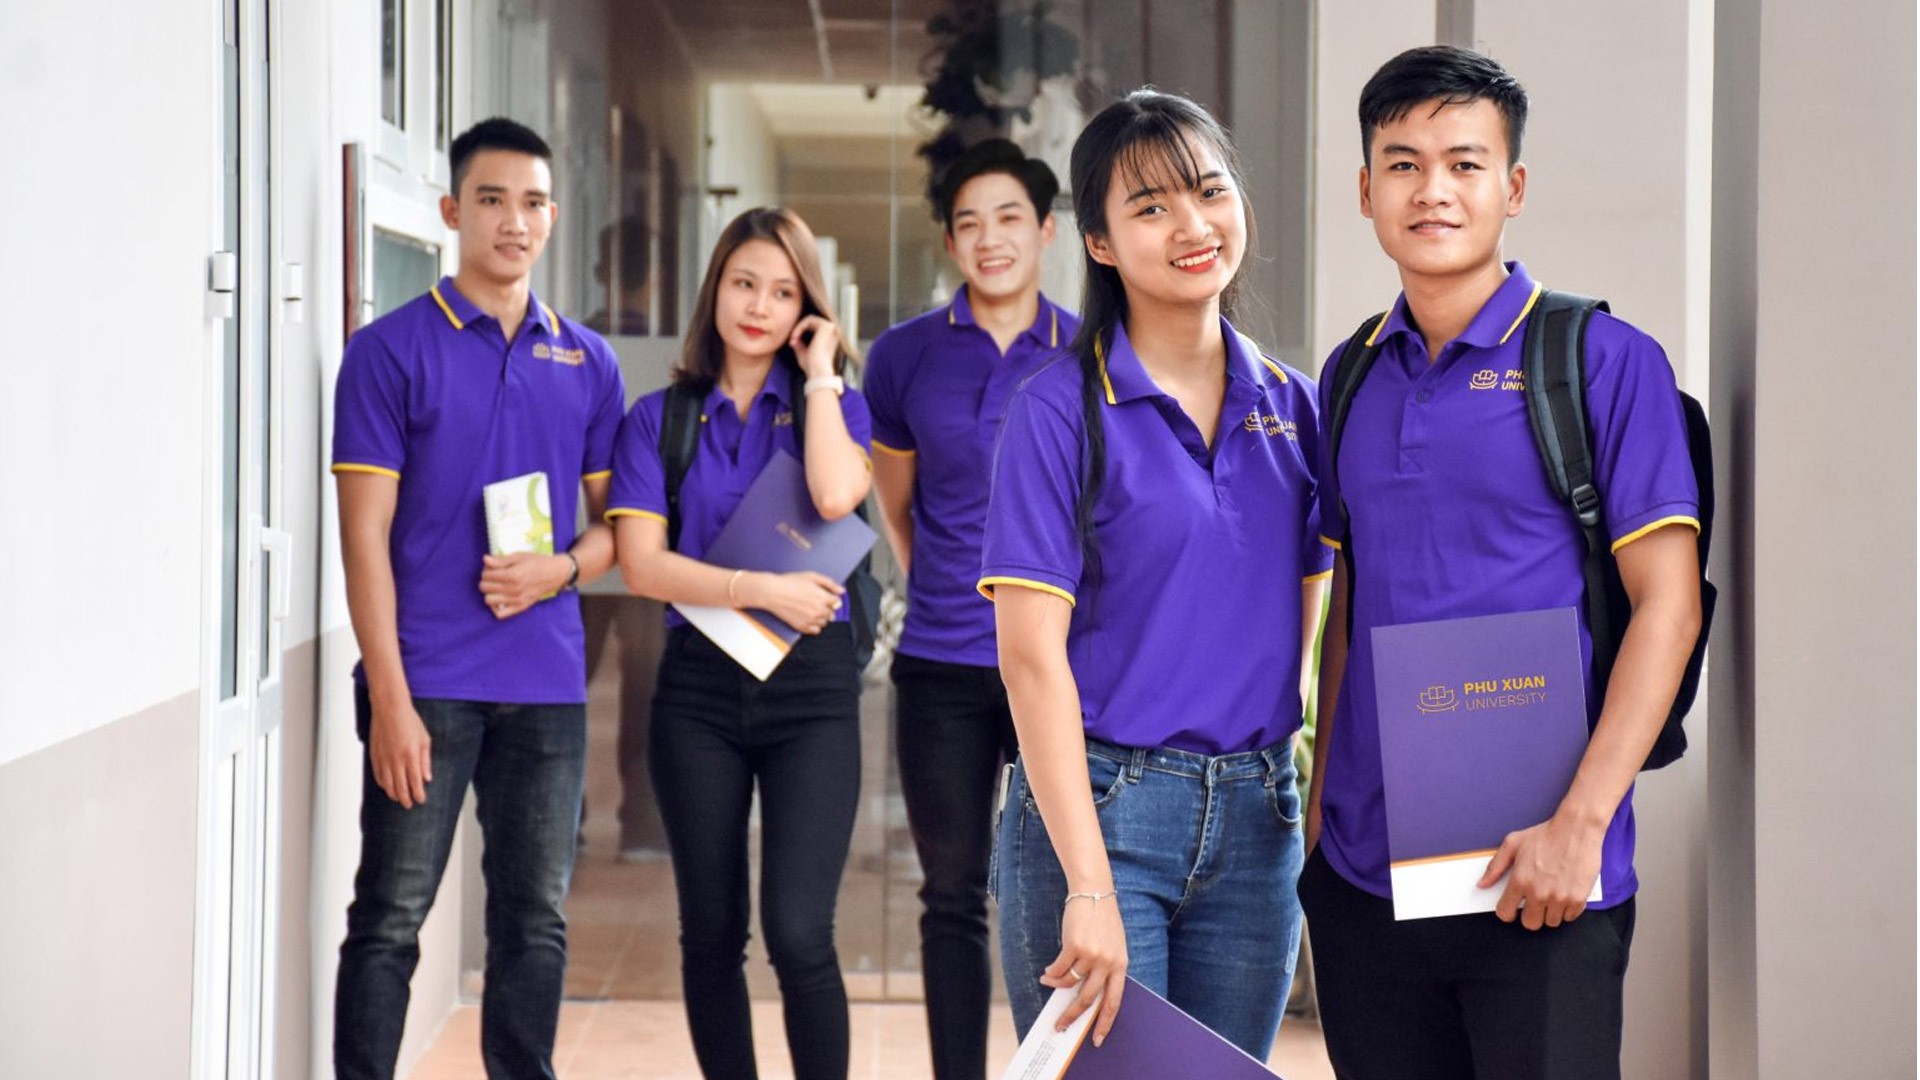 Vững vàng tương lai với 8 ngành học đào tạo tại Đại học Phú Xuân